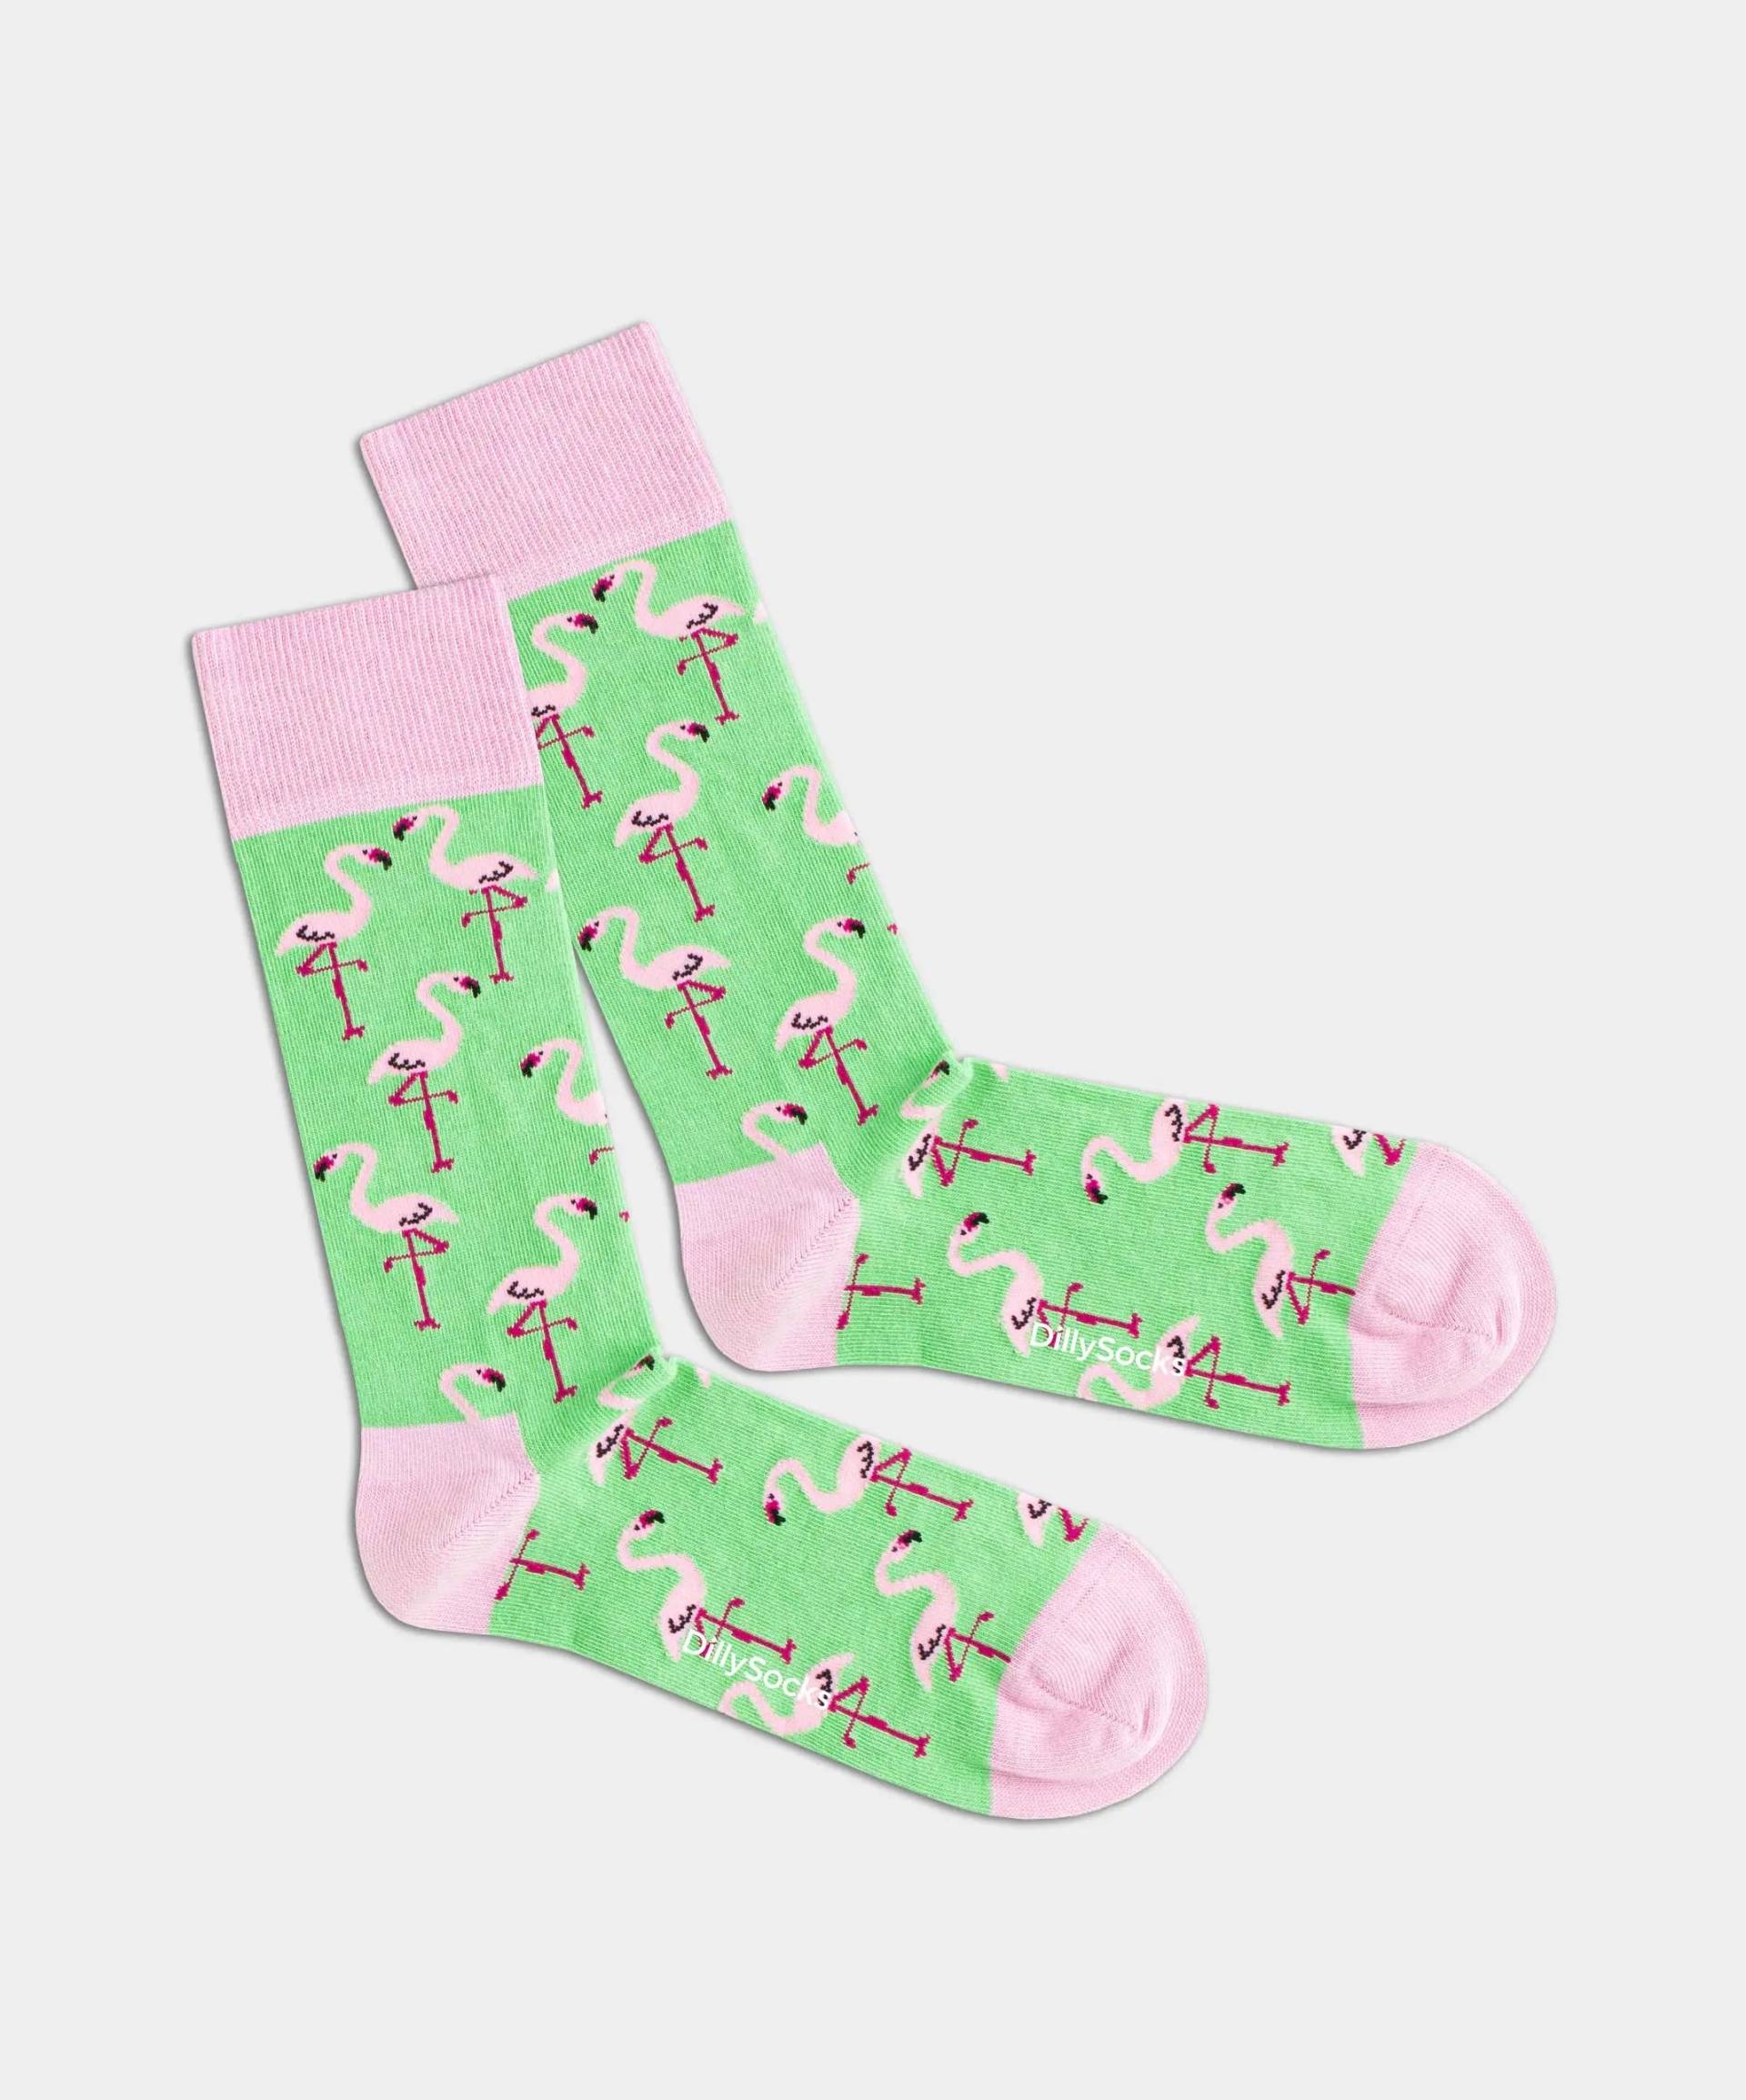 - Socken in Grün mit Tier Motiv/Muster von DillySocks